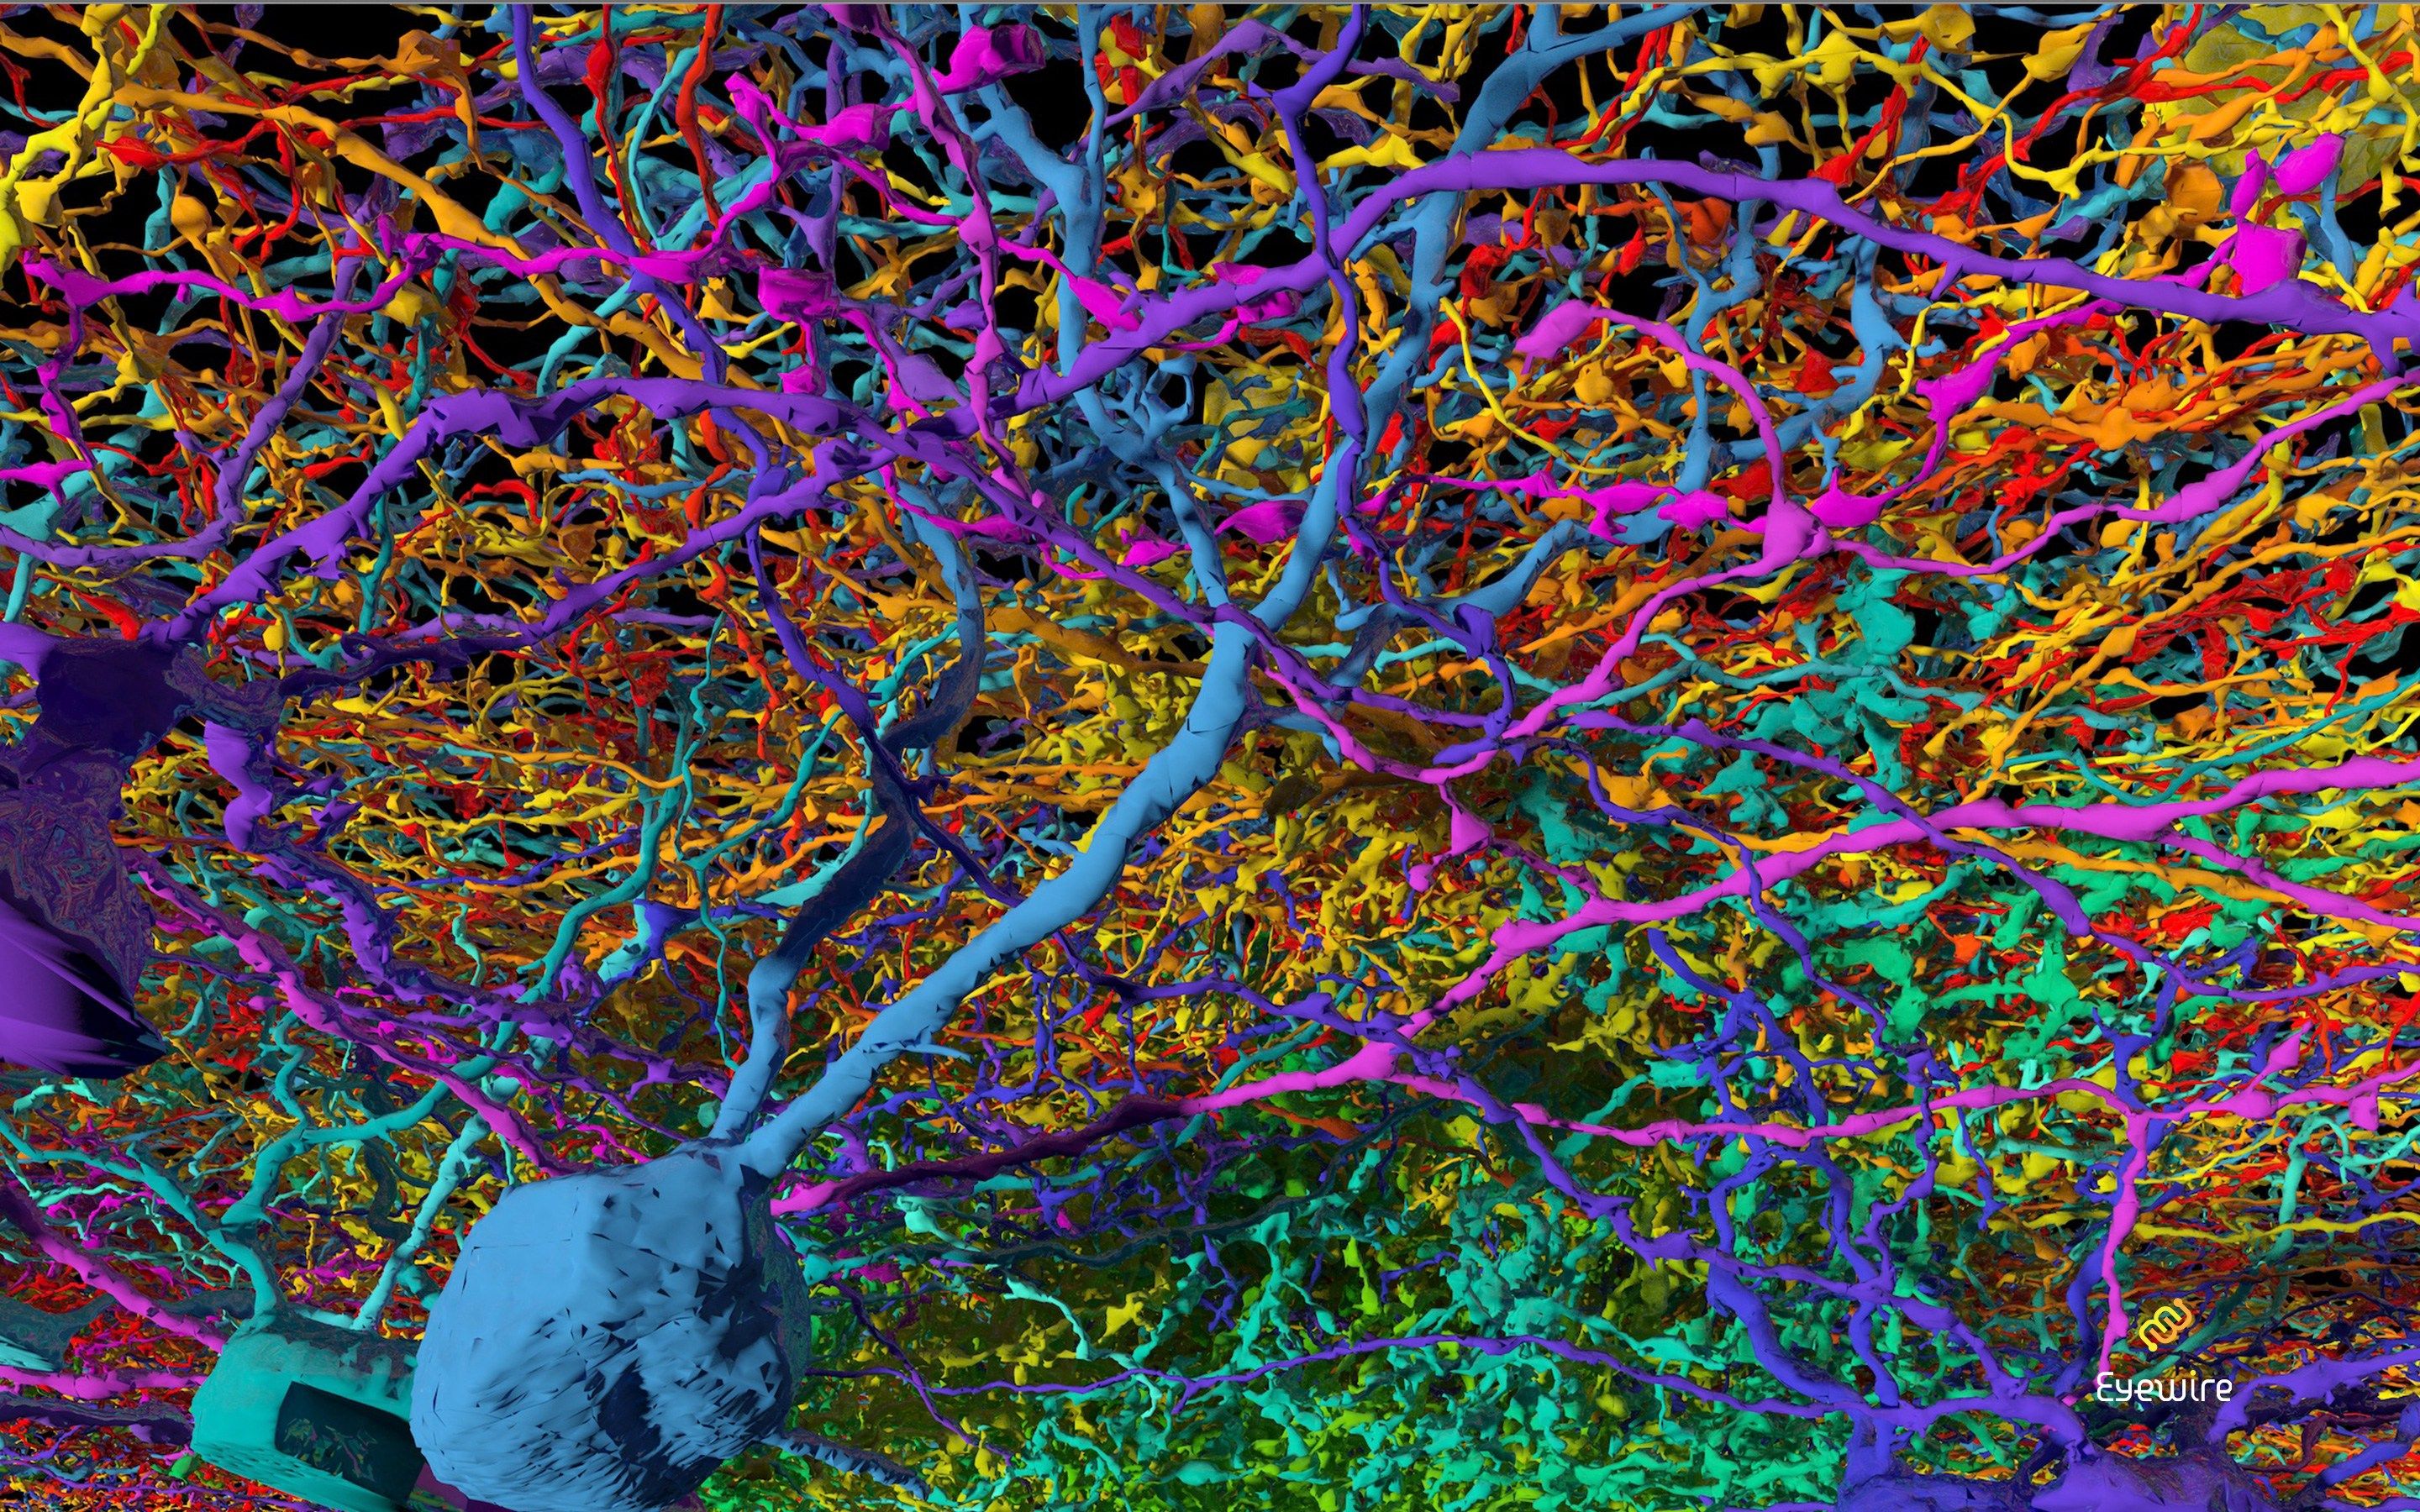 Нейронные сети коры головного мозга. Нейрон Пуанкаре микрофотография. Нейронная сеть мозга человека. Нейронная сеть человека под микроскопом.